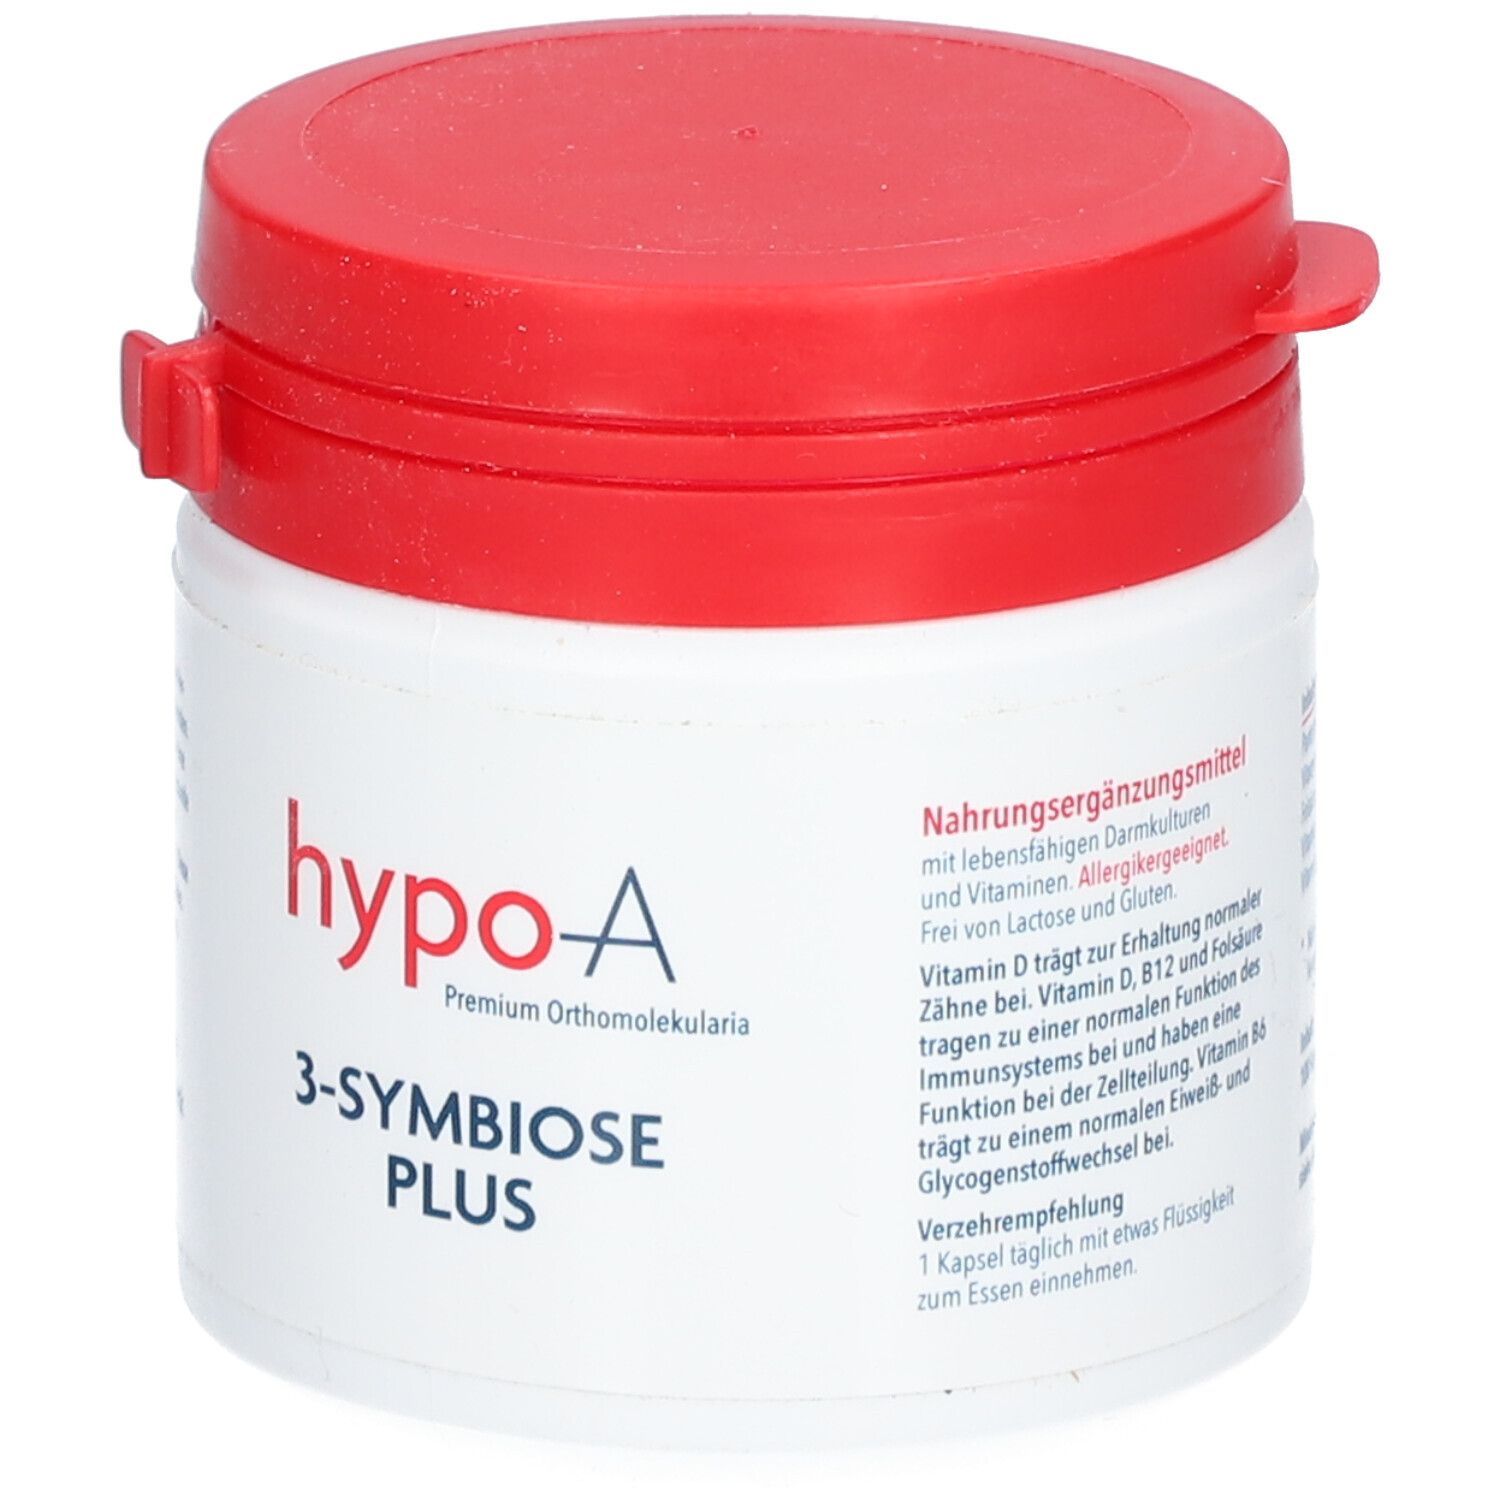 hypo-A 3-SymBiose plus